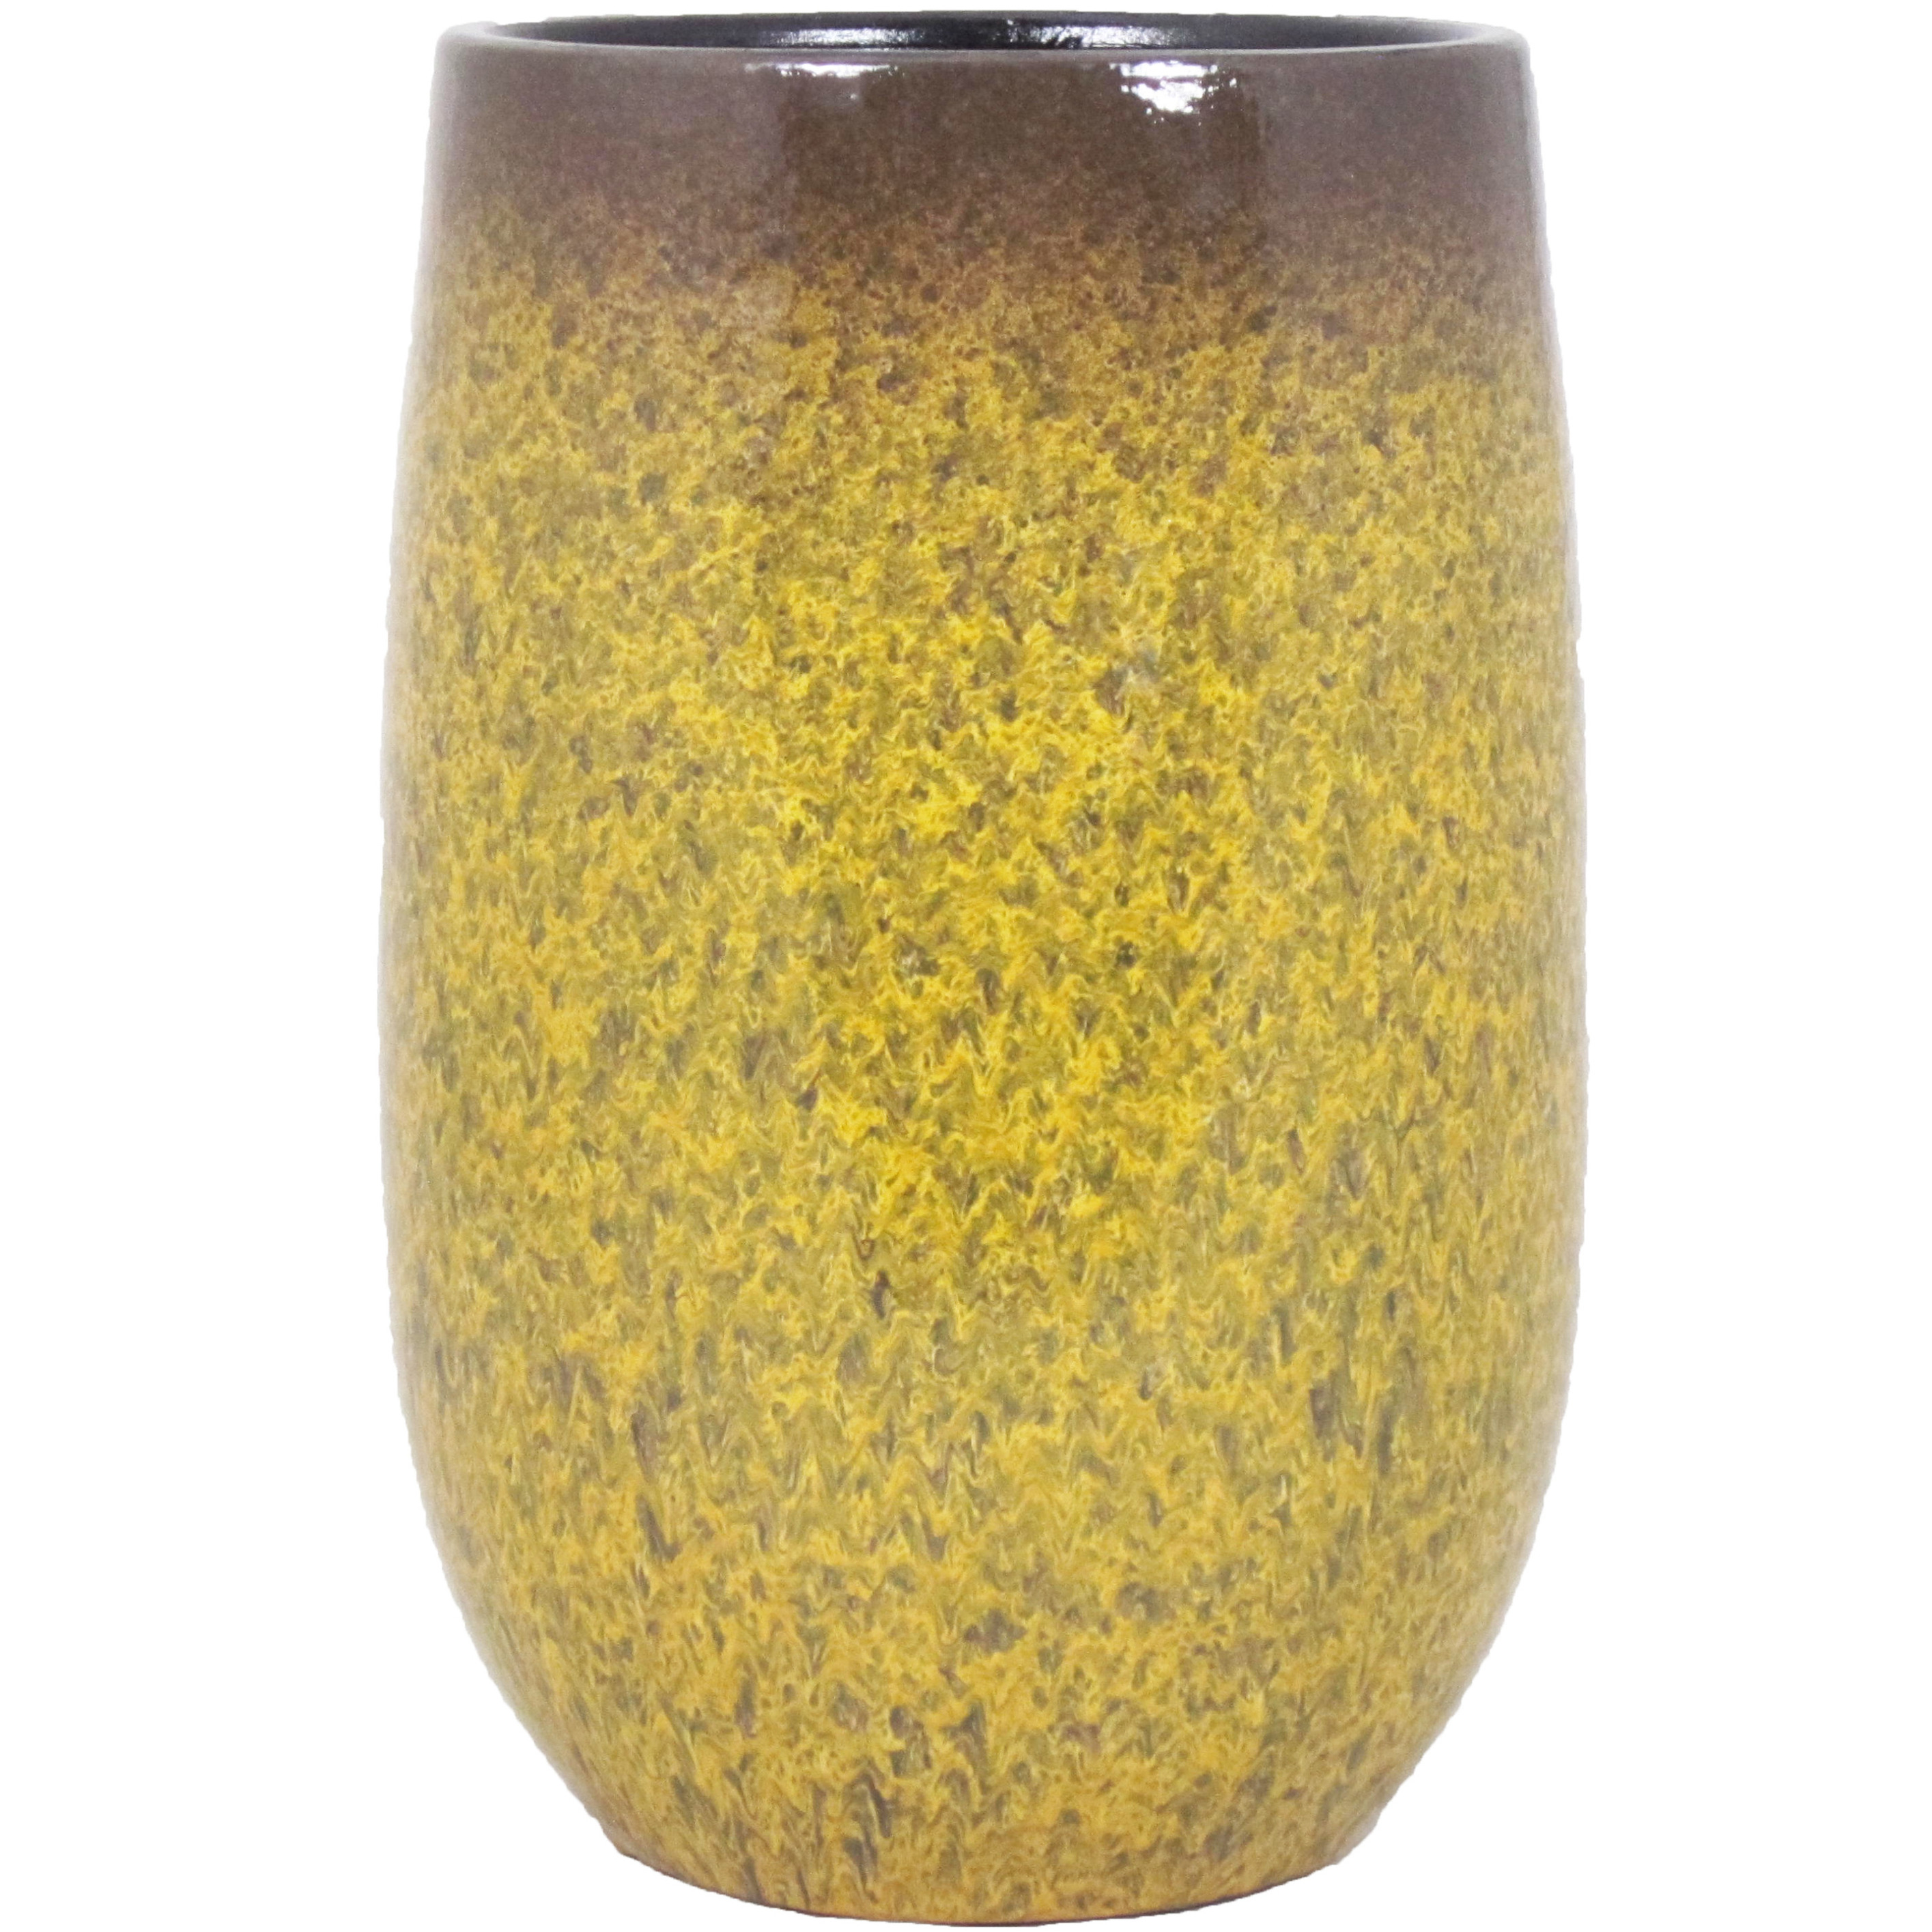 Bloempot vaas goud geel flakes keramiek voor bloemen-planten H40 x D22 cm